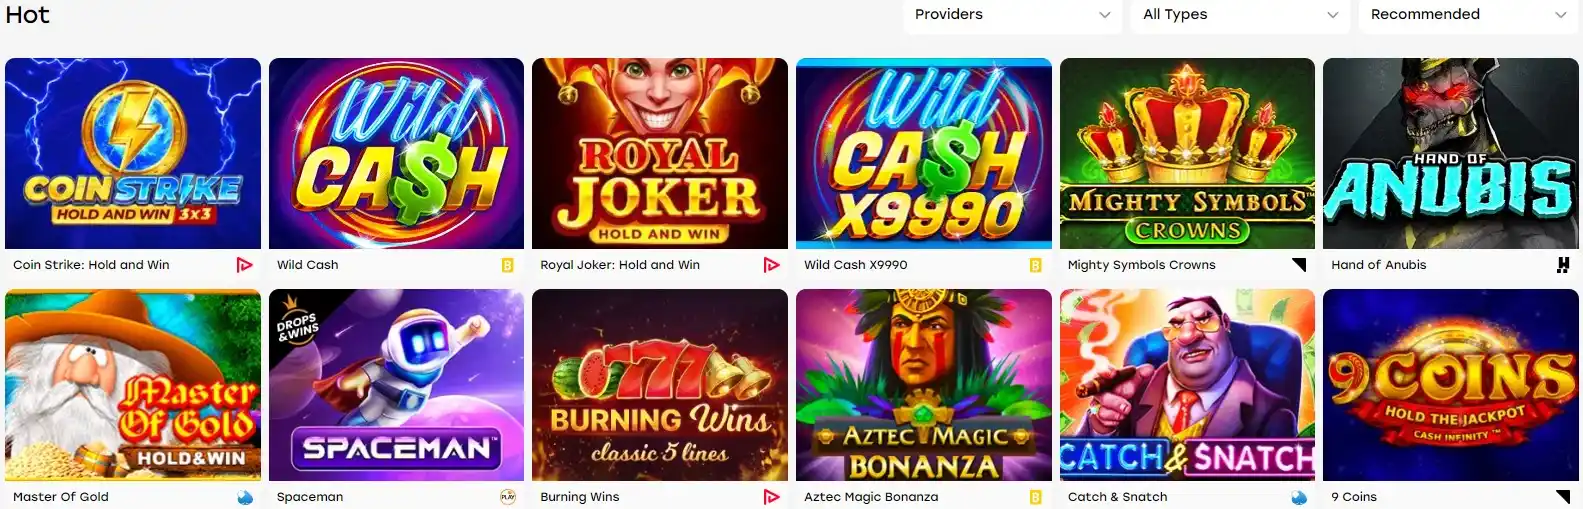 Weiss casino games